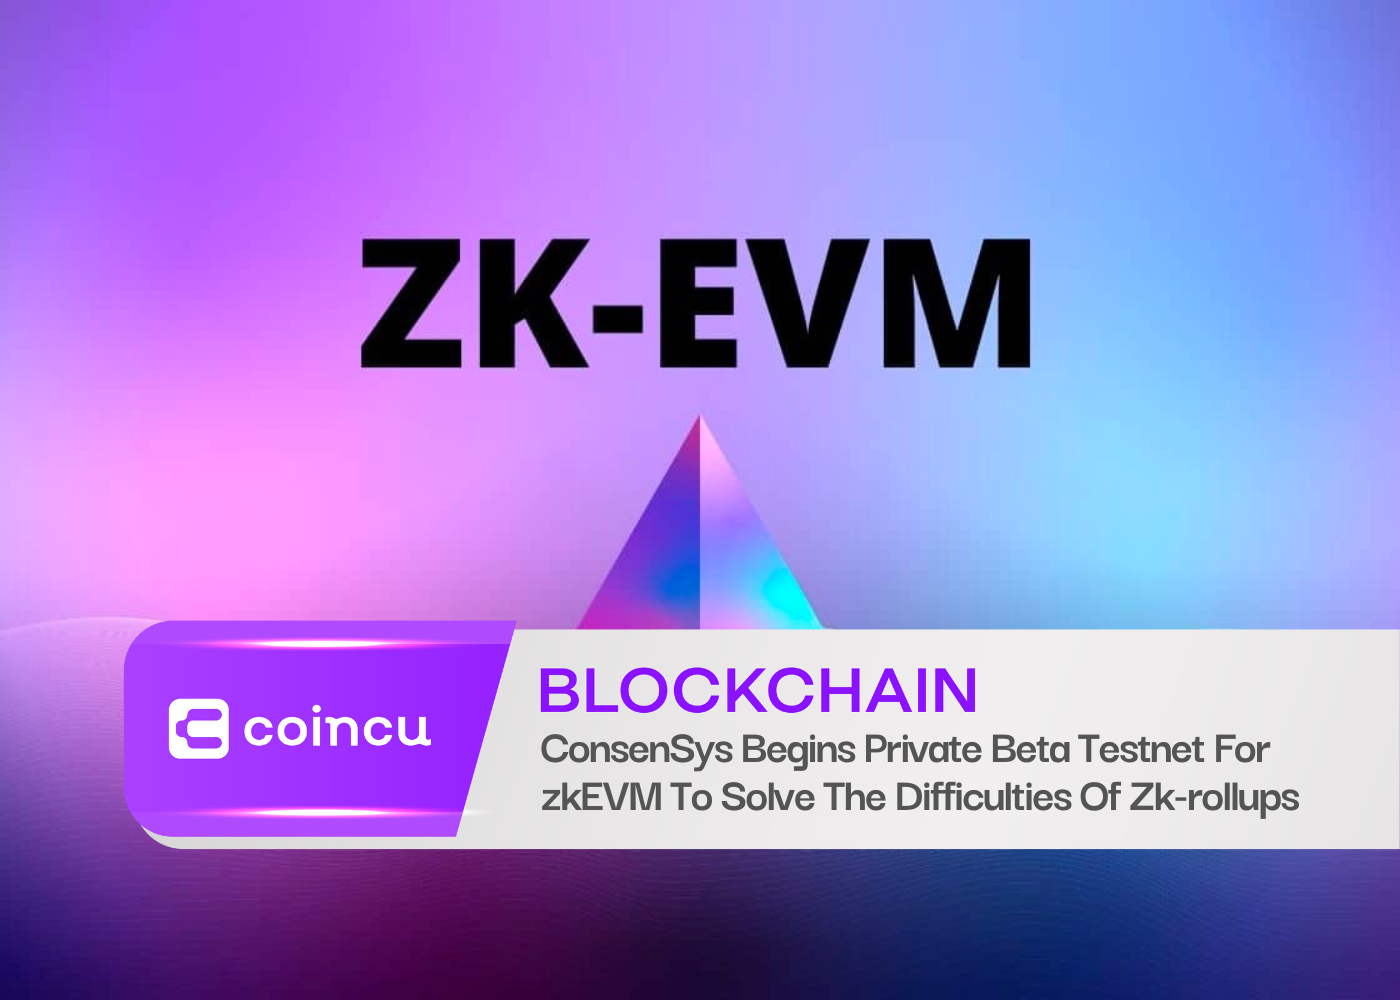 ConsenSys запускает частную бета-тестовую сеть для zkEVM, чтобы решить трудности Zk-rollups